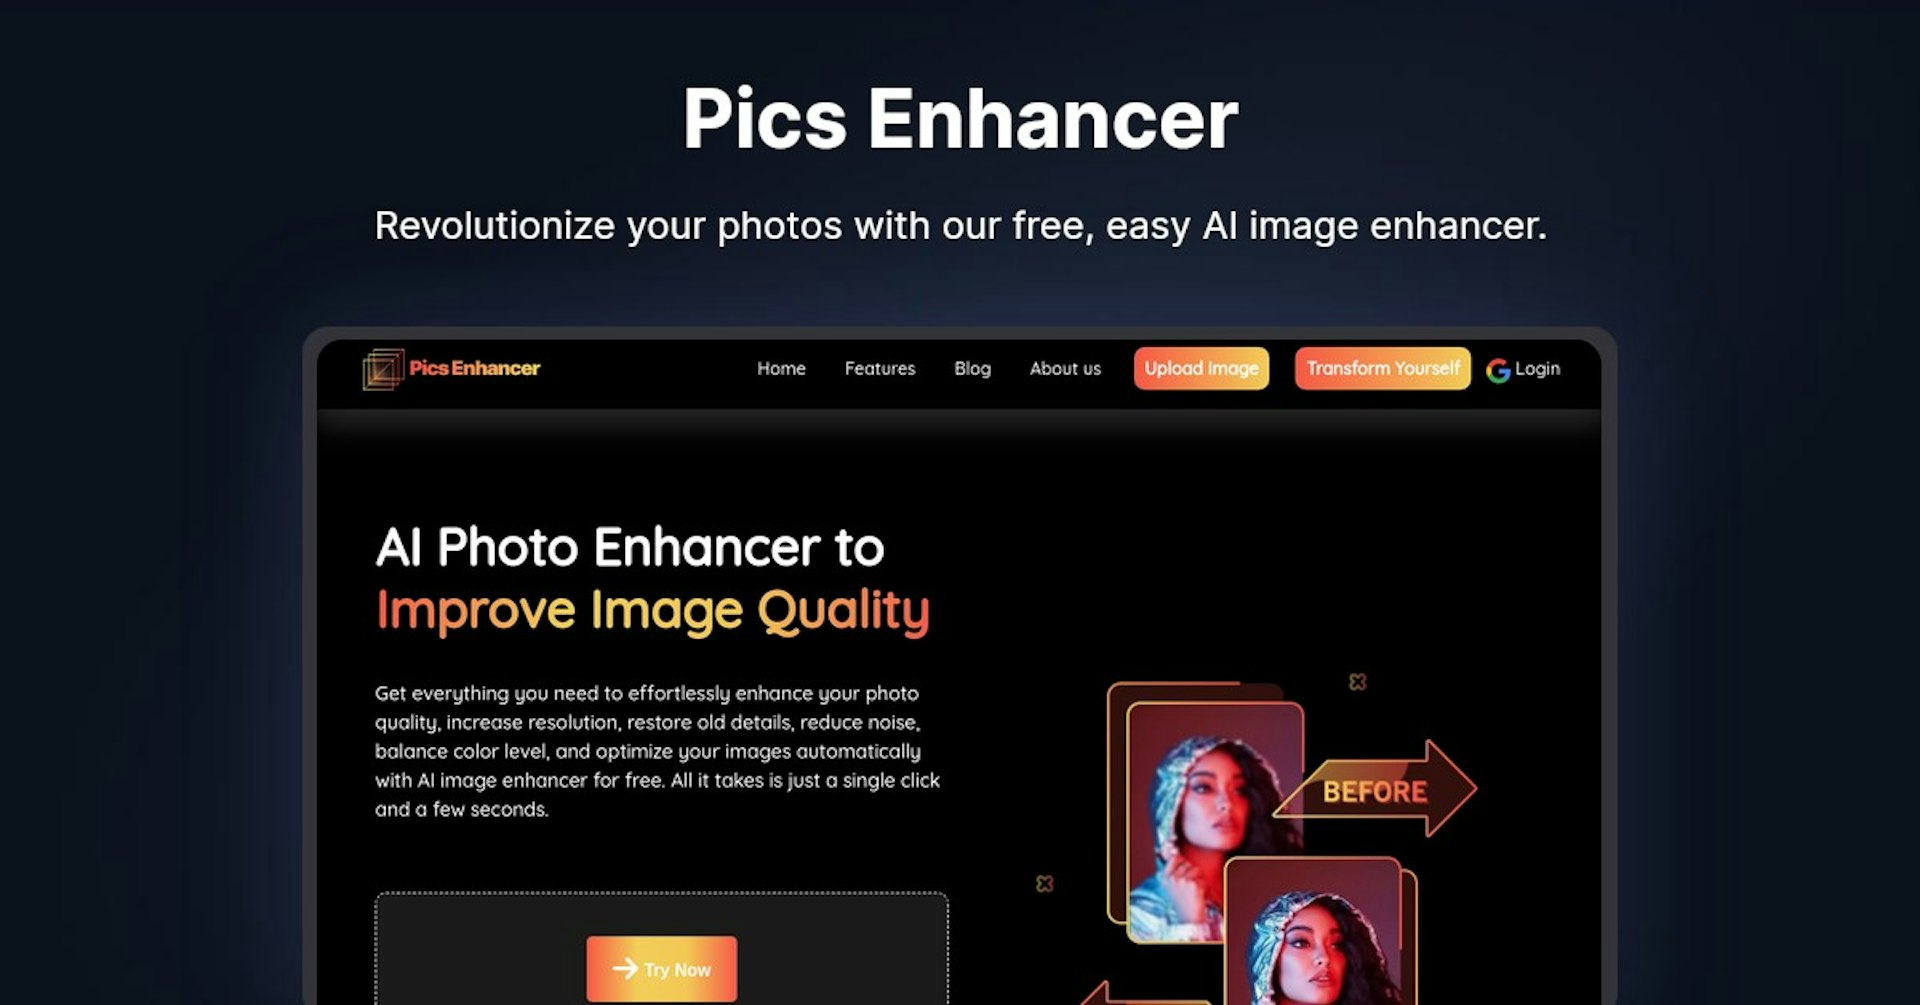 Pics Enhancer